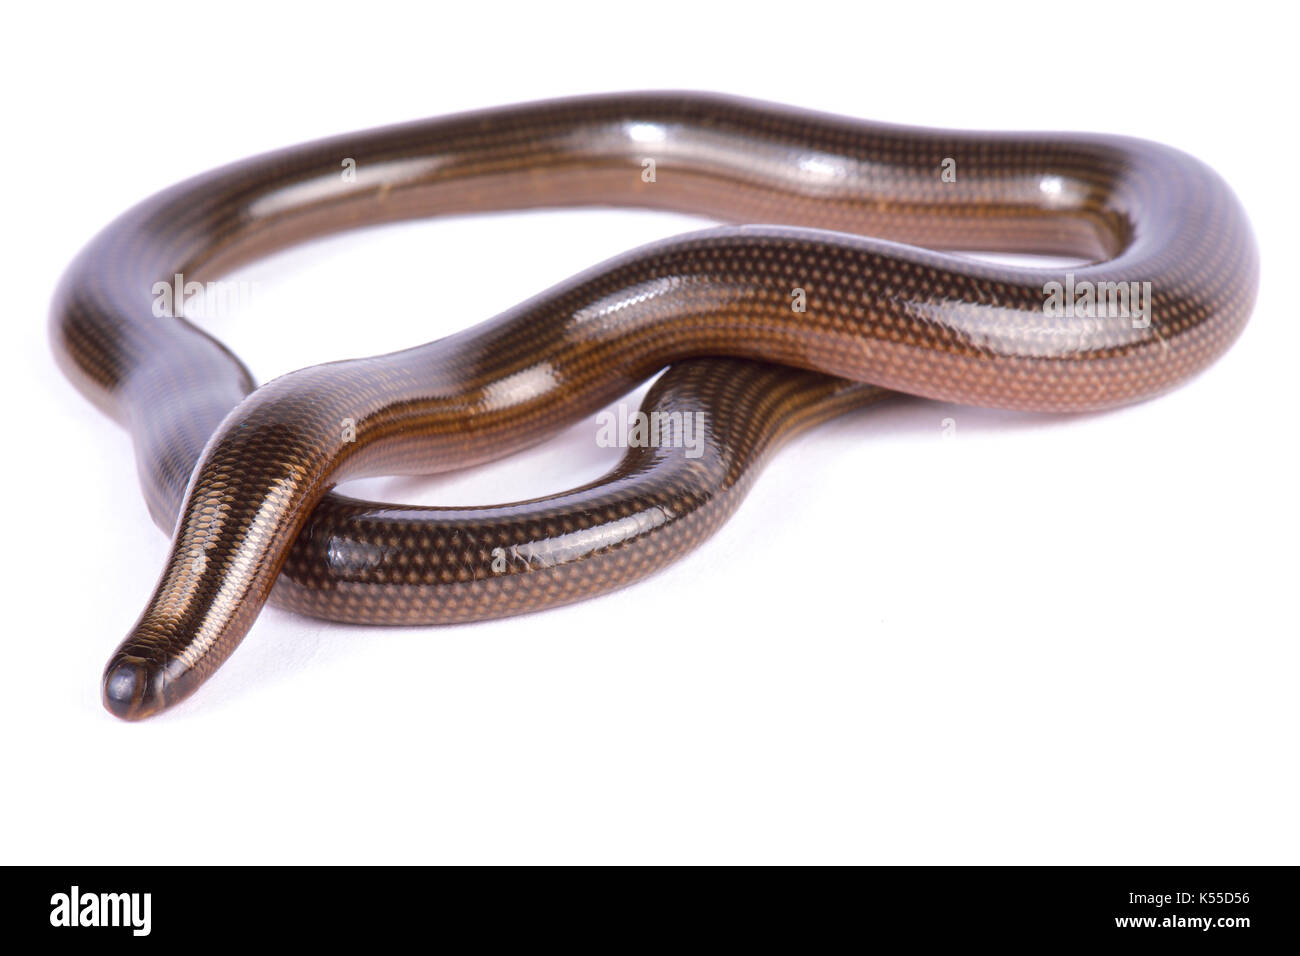 Lineolate blind snake, Afrotyphlopinae lineolatus Stock Photo